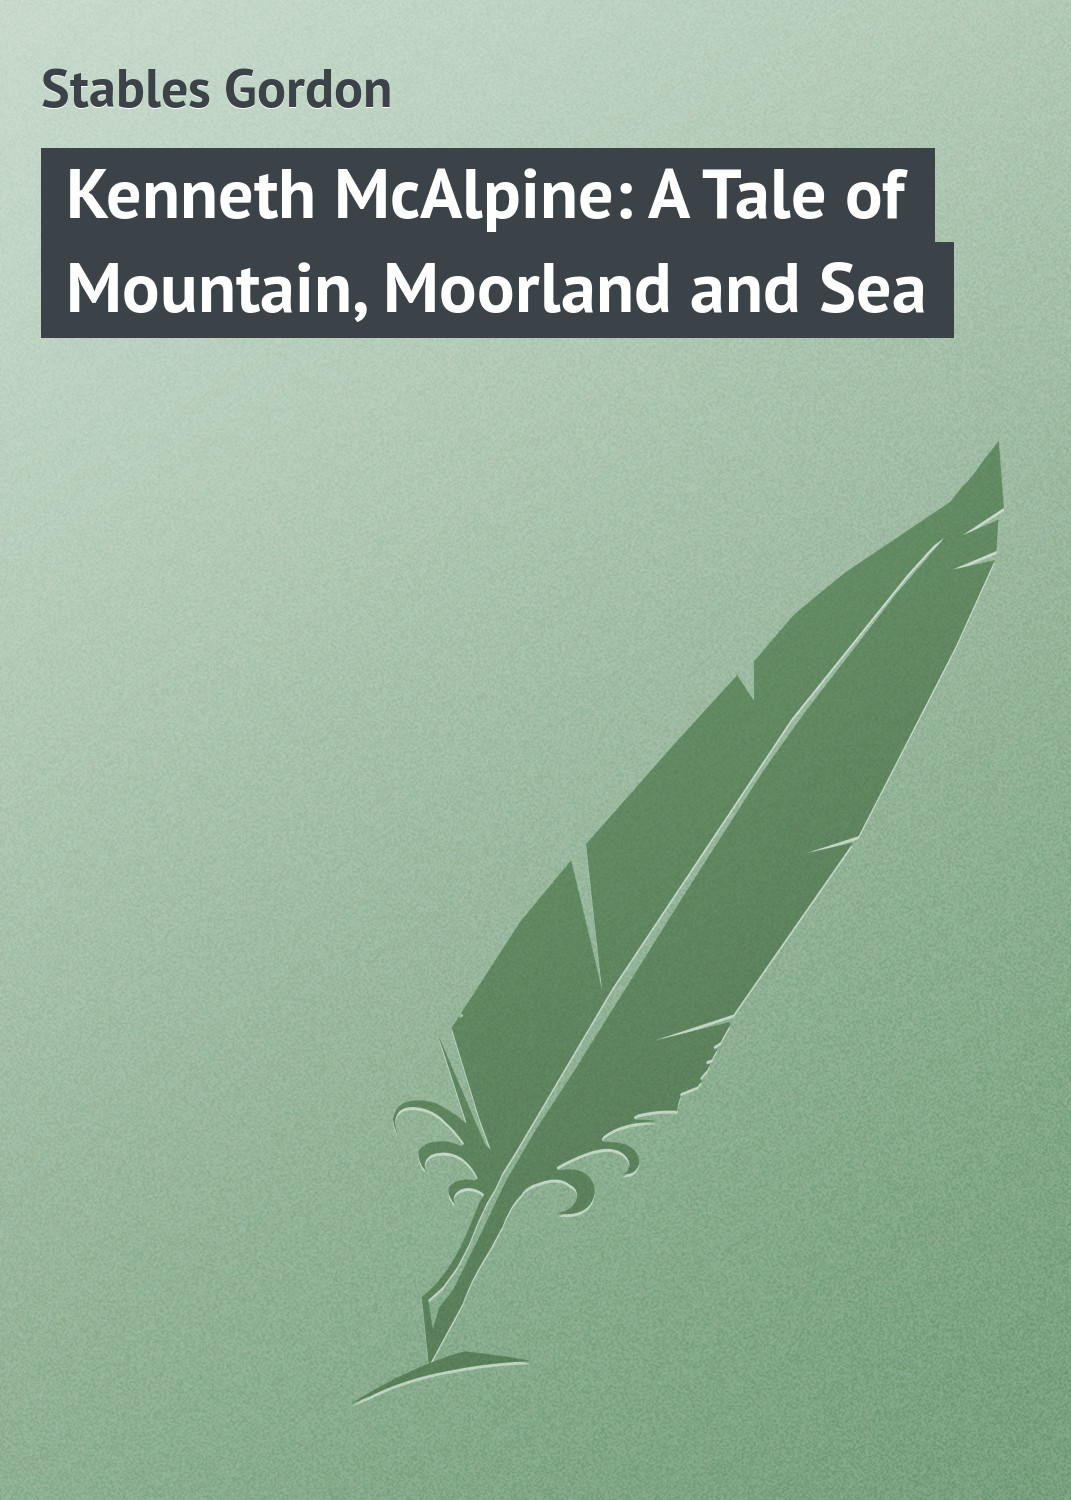 Книга Kenneth McAlpine: A Tale of Mountain, Moorland and Sea из серии , созданная Gordon Stables, может относится к жанру Зарубежная классика. Стоимость электронной книги Kenneth McAlpine: A Tale of Mountain, Moorland and Sea с идентификатором 23149467 составляет 5.99 руб.